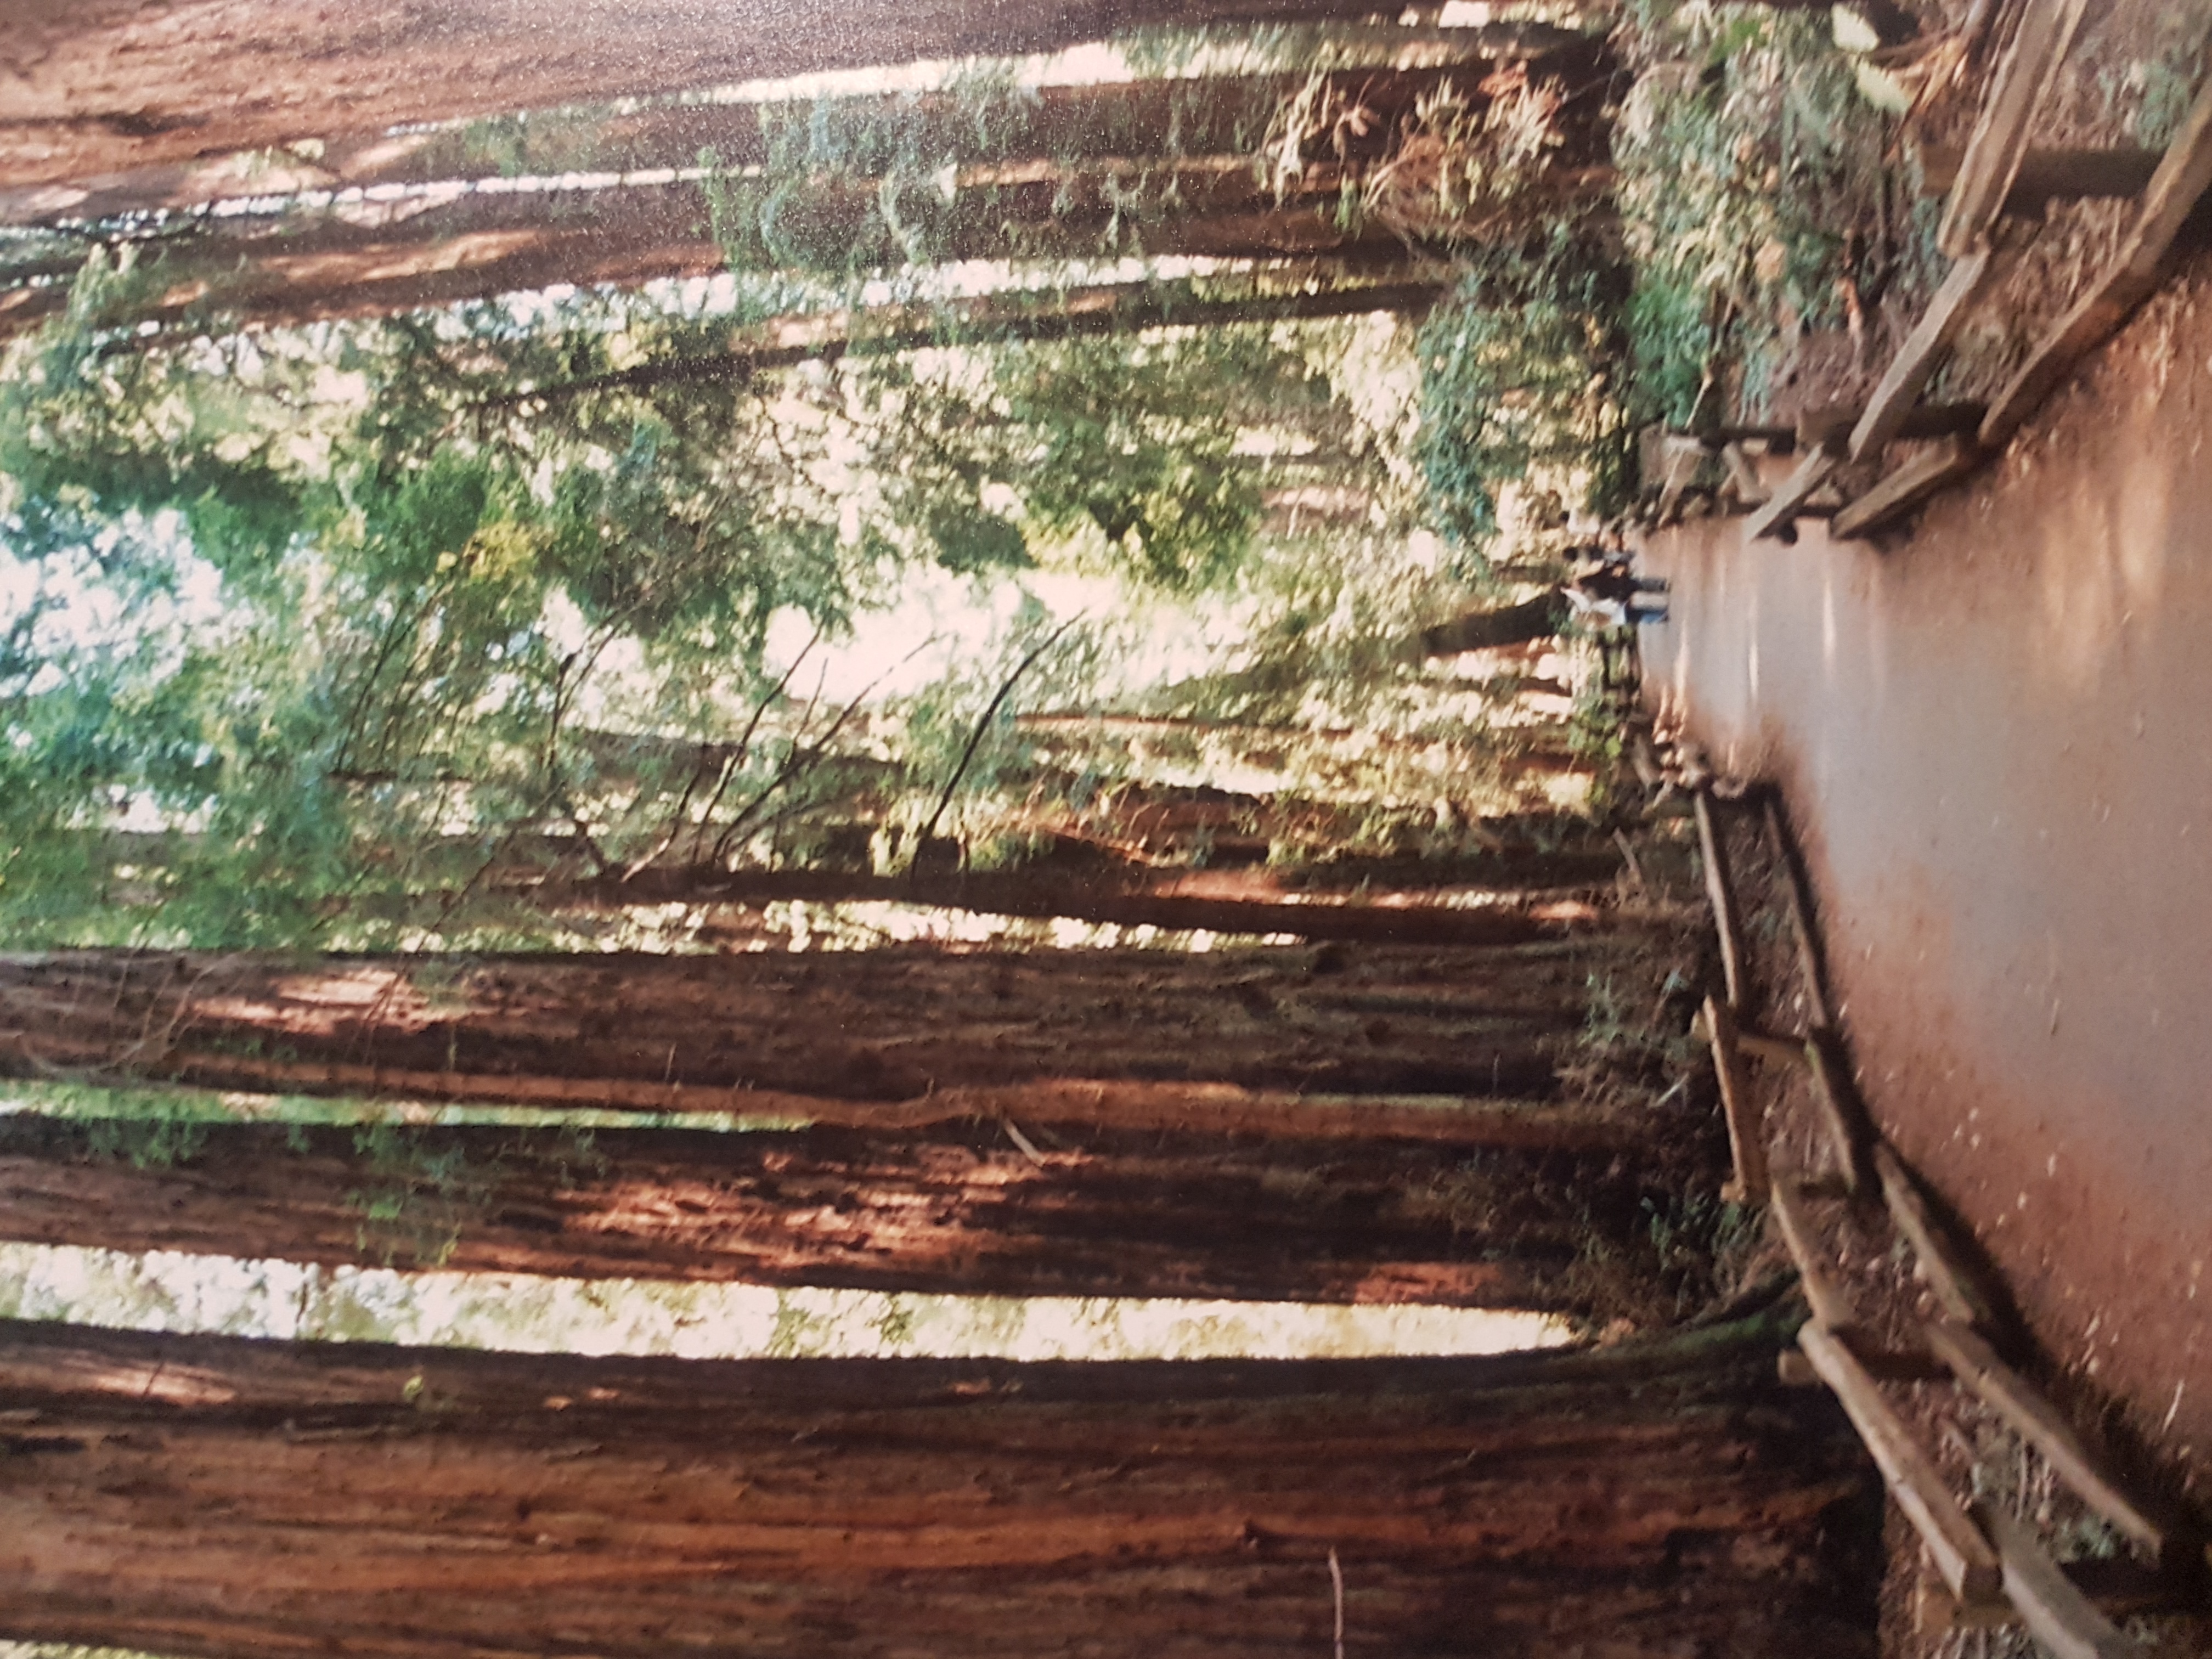 muir woods sausalito california (4)